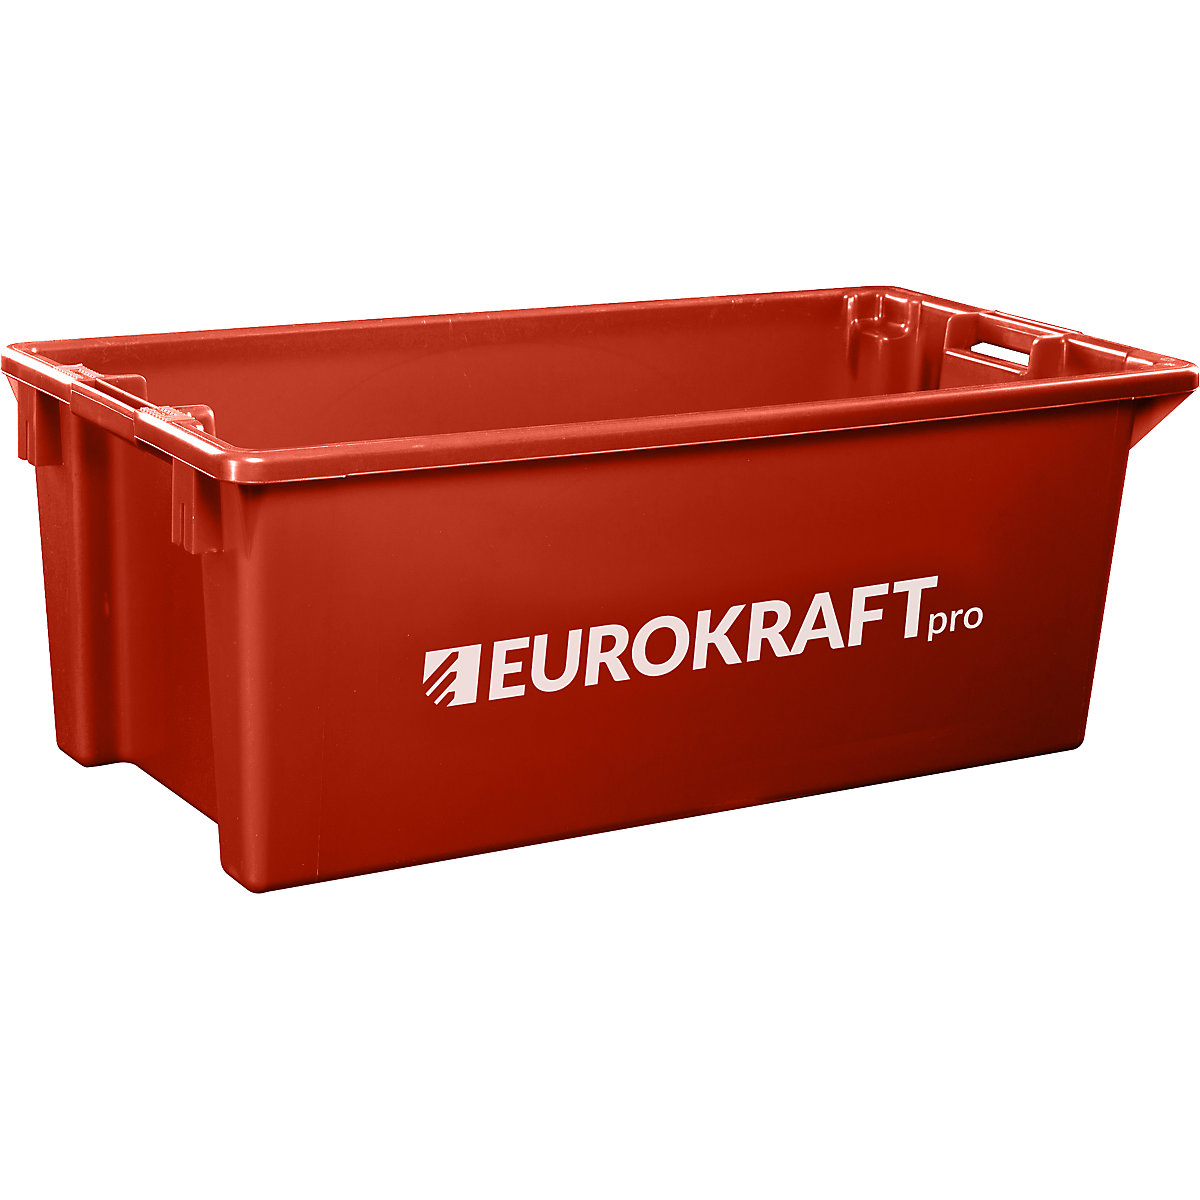 EUROKRAFTpro – Obrotowy pojemnik do ustawiania w stos z polipropylenu dopuszczonego do kontaktu z żywnością, poj. 13 l, opak. 4 szt., ścianki i dno zamknięte, czerwone